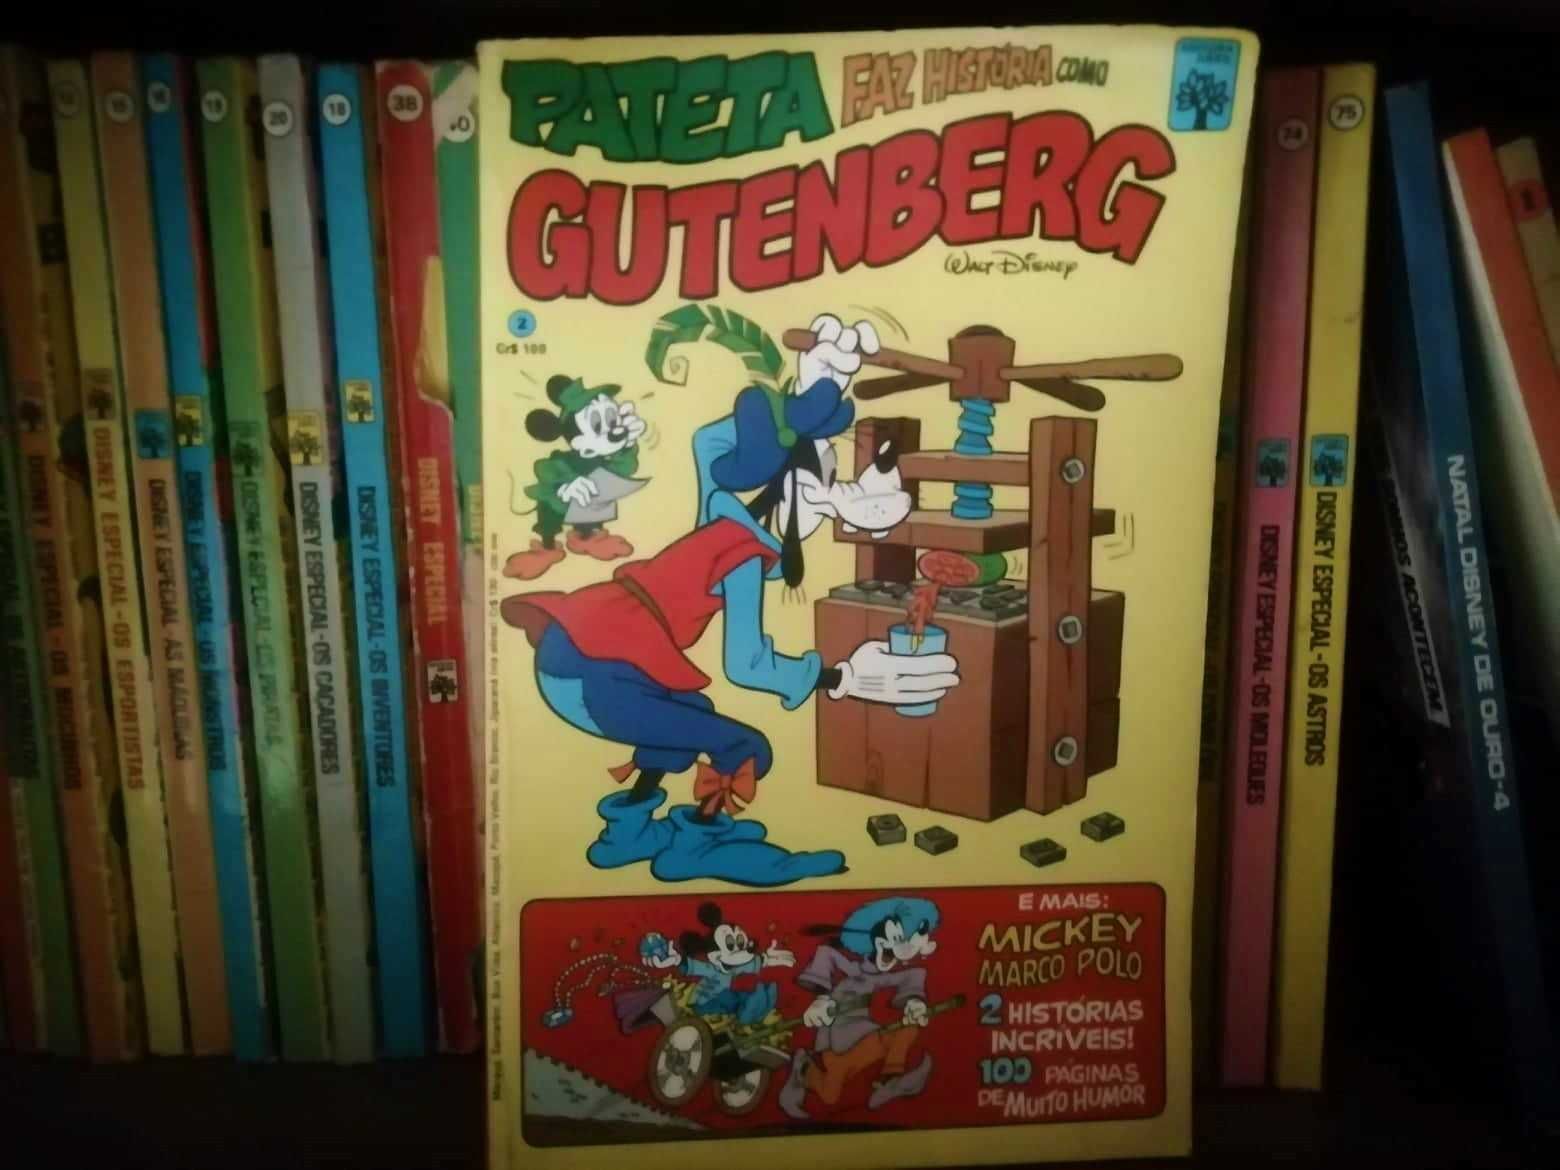 Disney Especial e Almanaque Patinhas (edições anos 80)